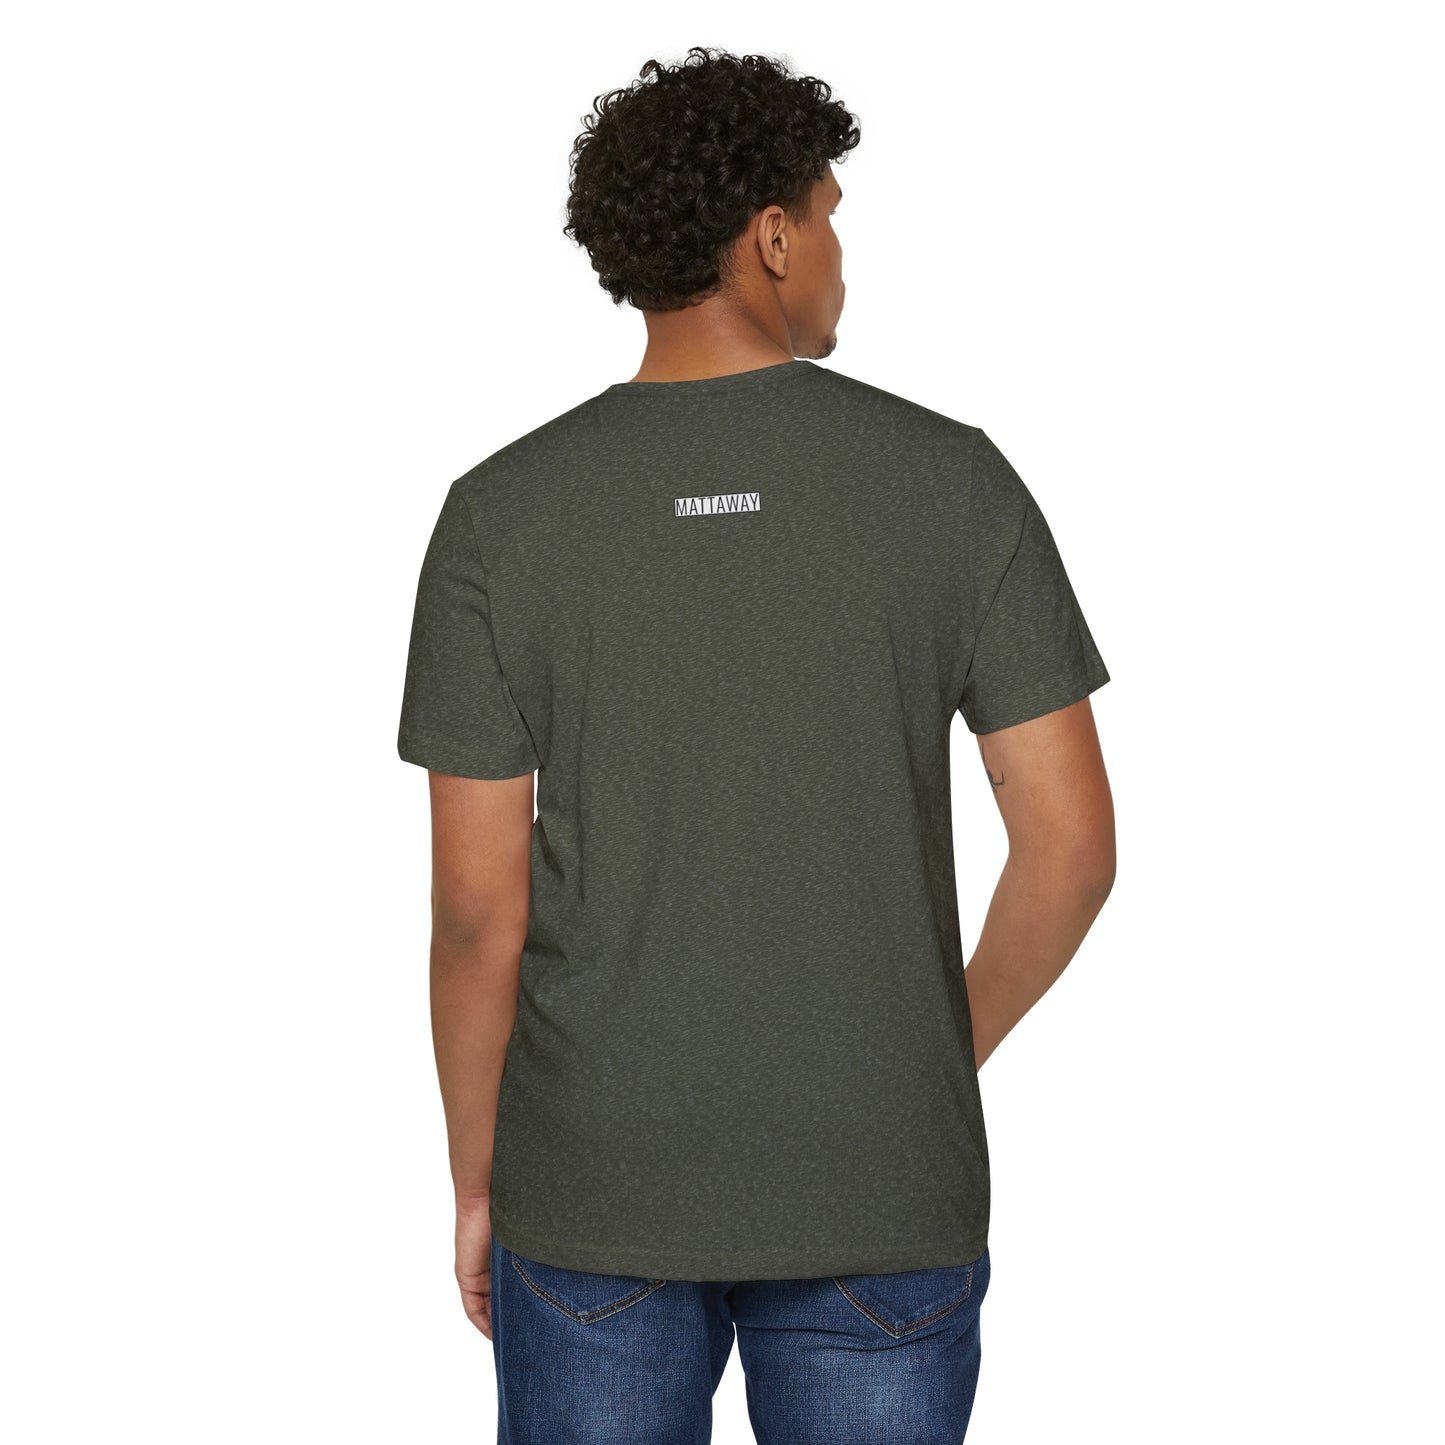 MINIMAL SHAPES 104 - Unisex Recycled Organic T-Shirt